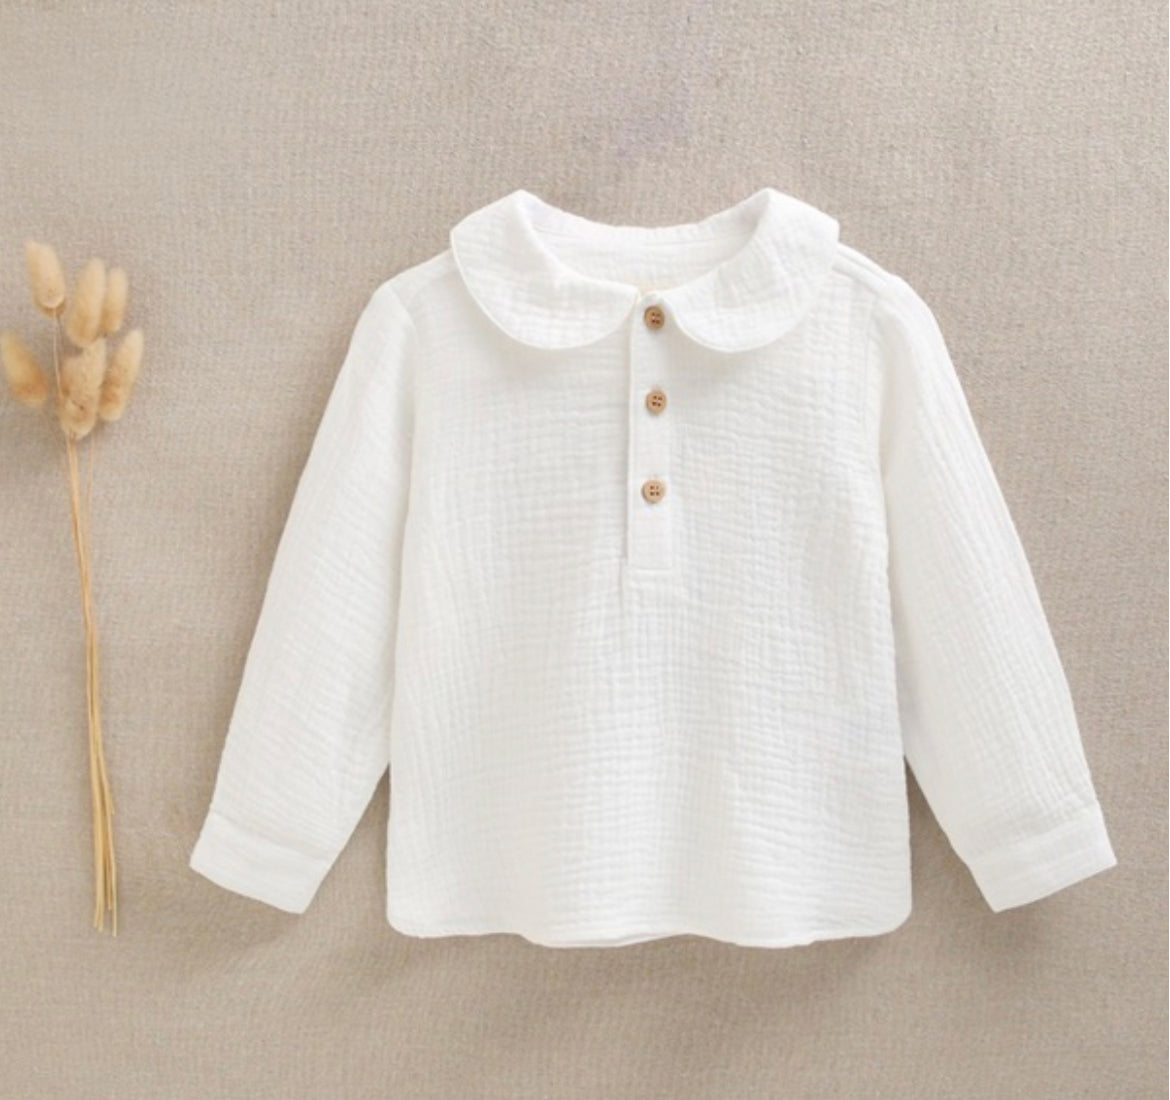 Camisa cuello bebé blanca botones de madera colección bossa nova